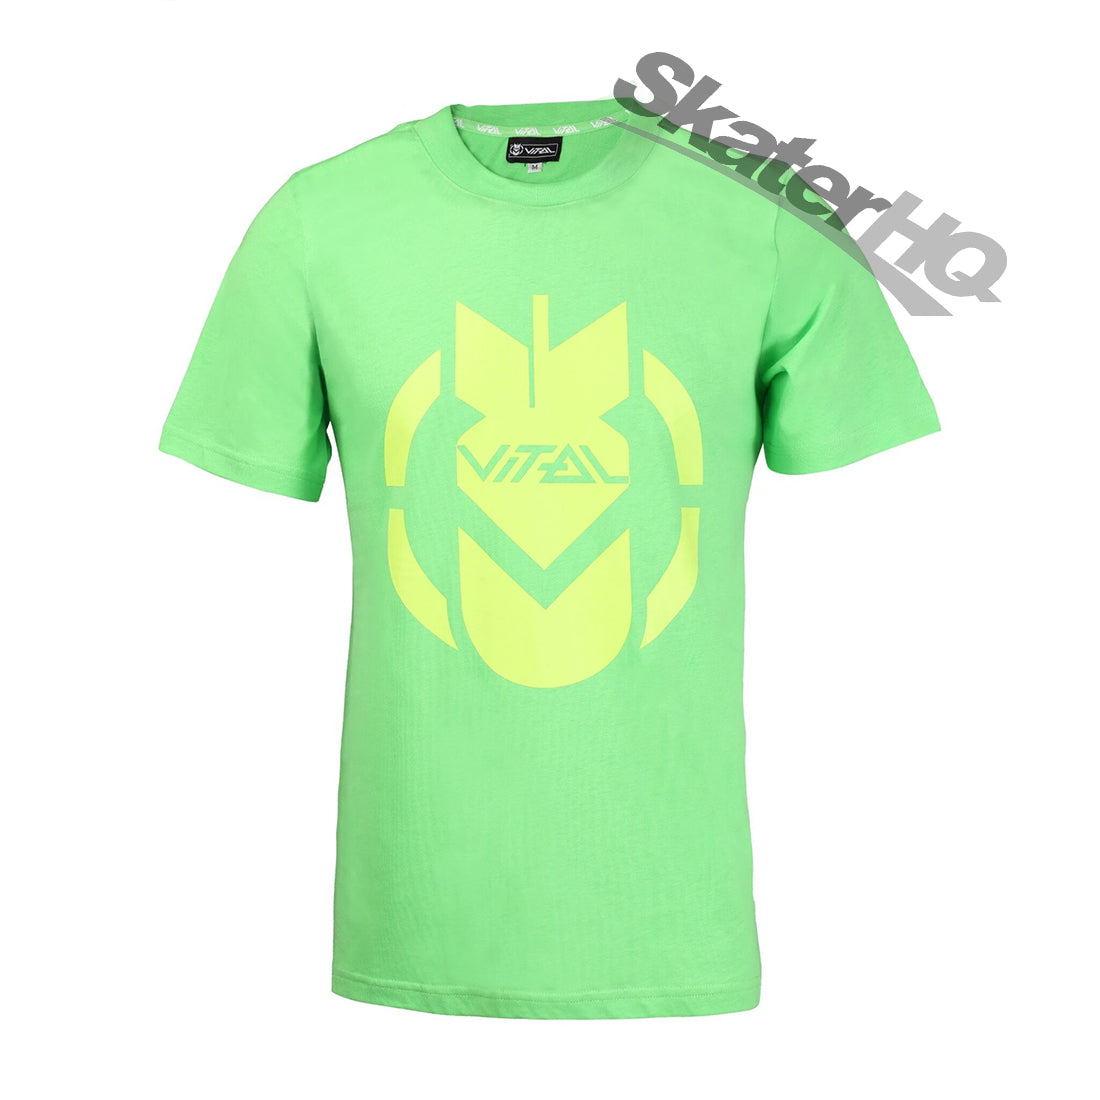 Vital Bomb T-Shirt - Green - Small Apparel Tshirts